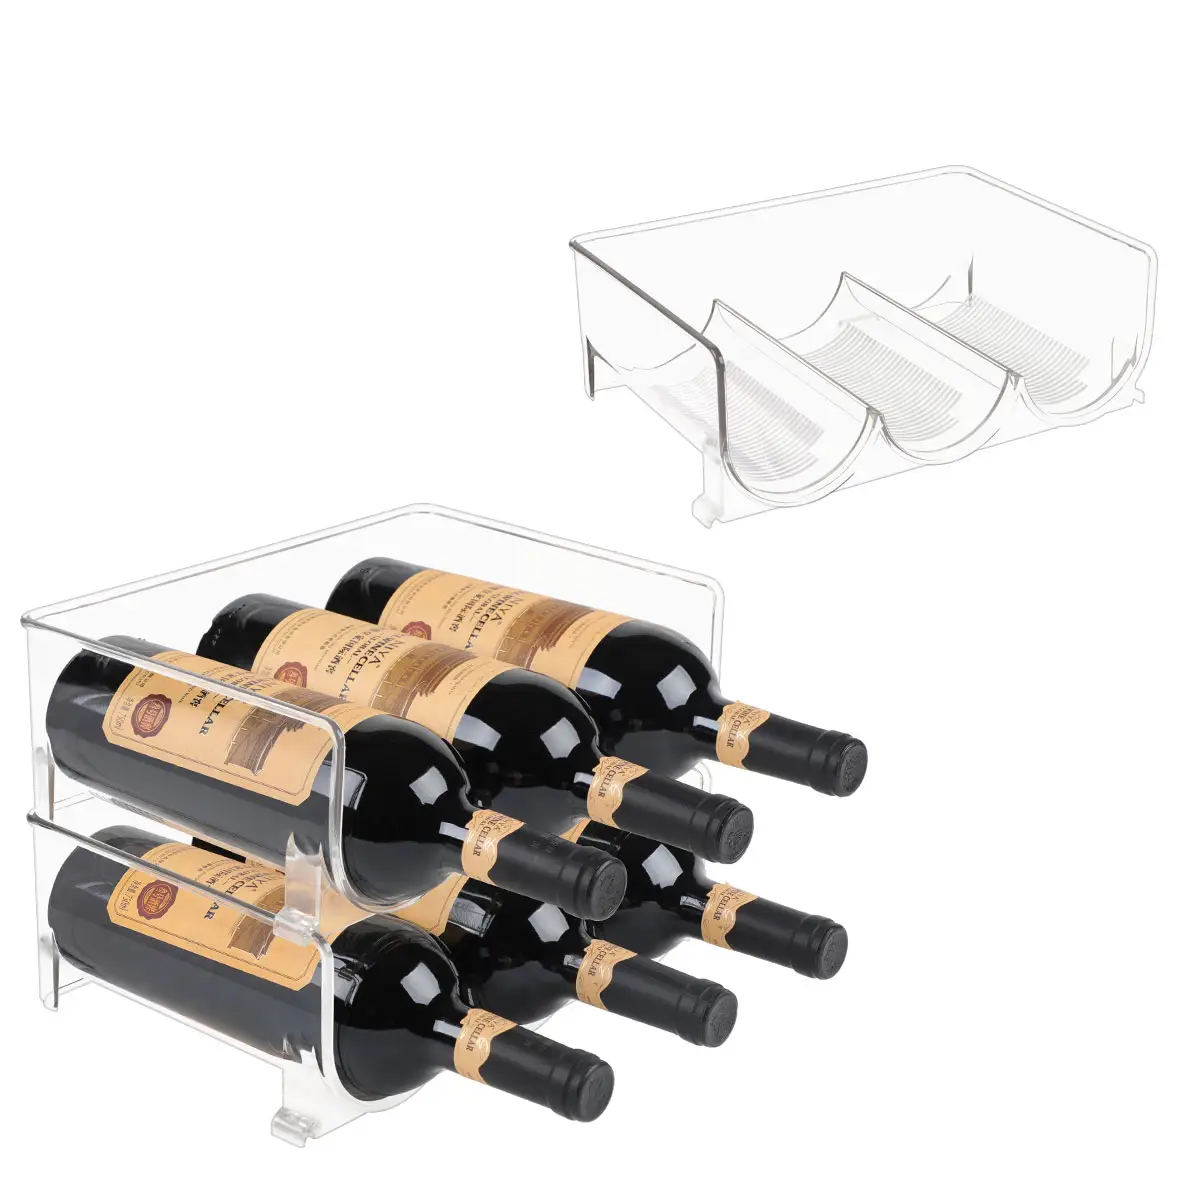 Wine Storage Bin Refrigerator Wine And Water Bottle Storage Organizer Holder Wine Rack Stackable Storage Organizer For Kitchen